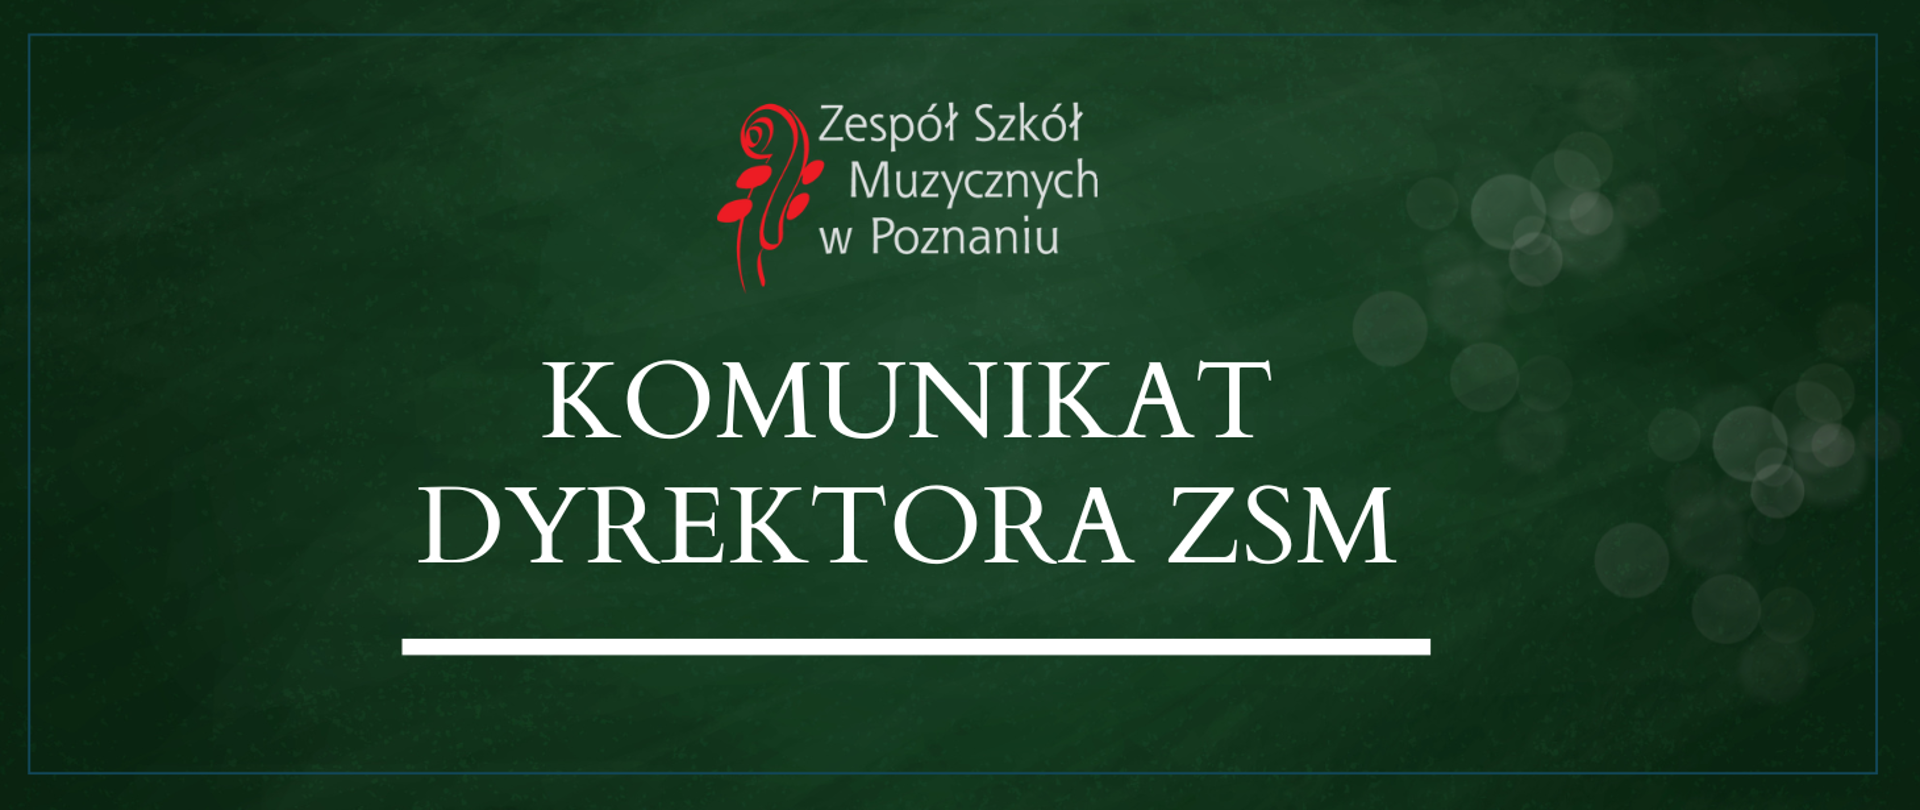 Zielona grafika z logo szkoły i białym napisem Komunikat dyrektora ZSM